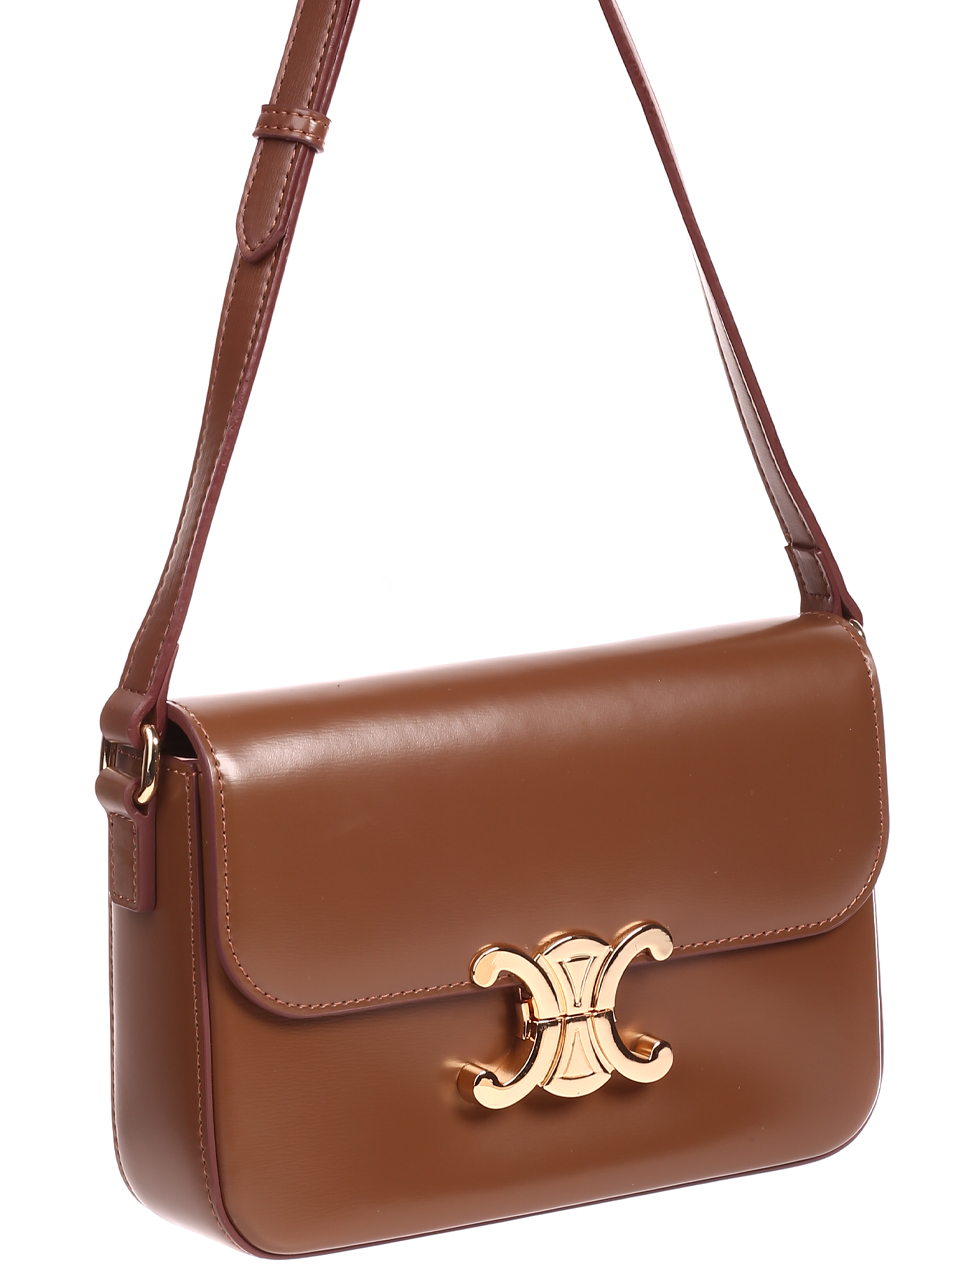 Ежедневна дамска чанта от естествена кожа в кафяво JT20807 brown